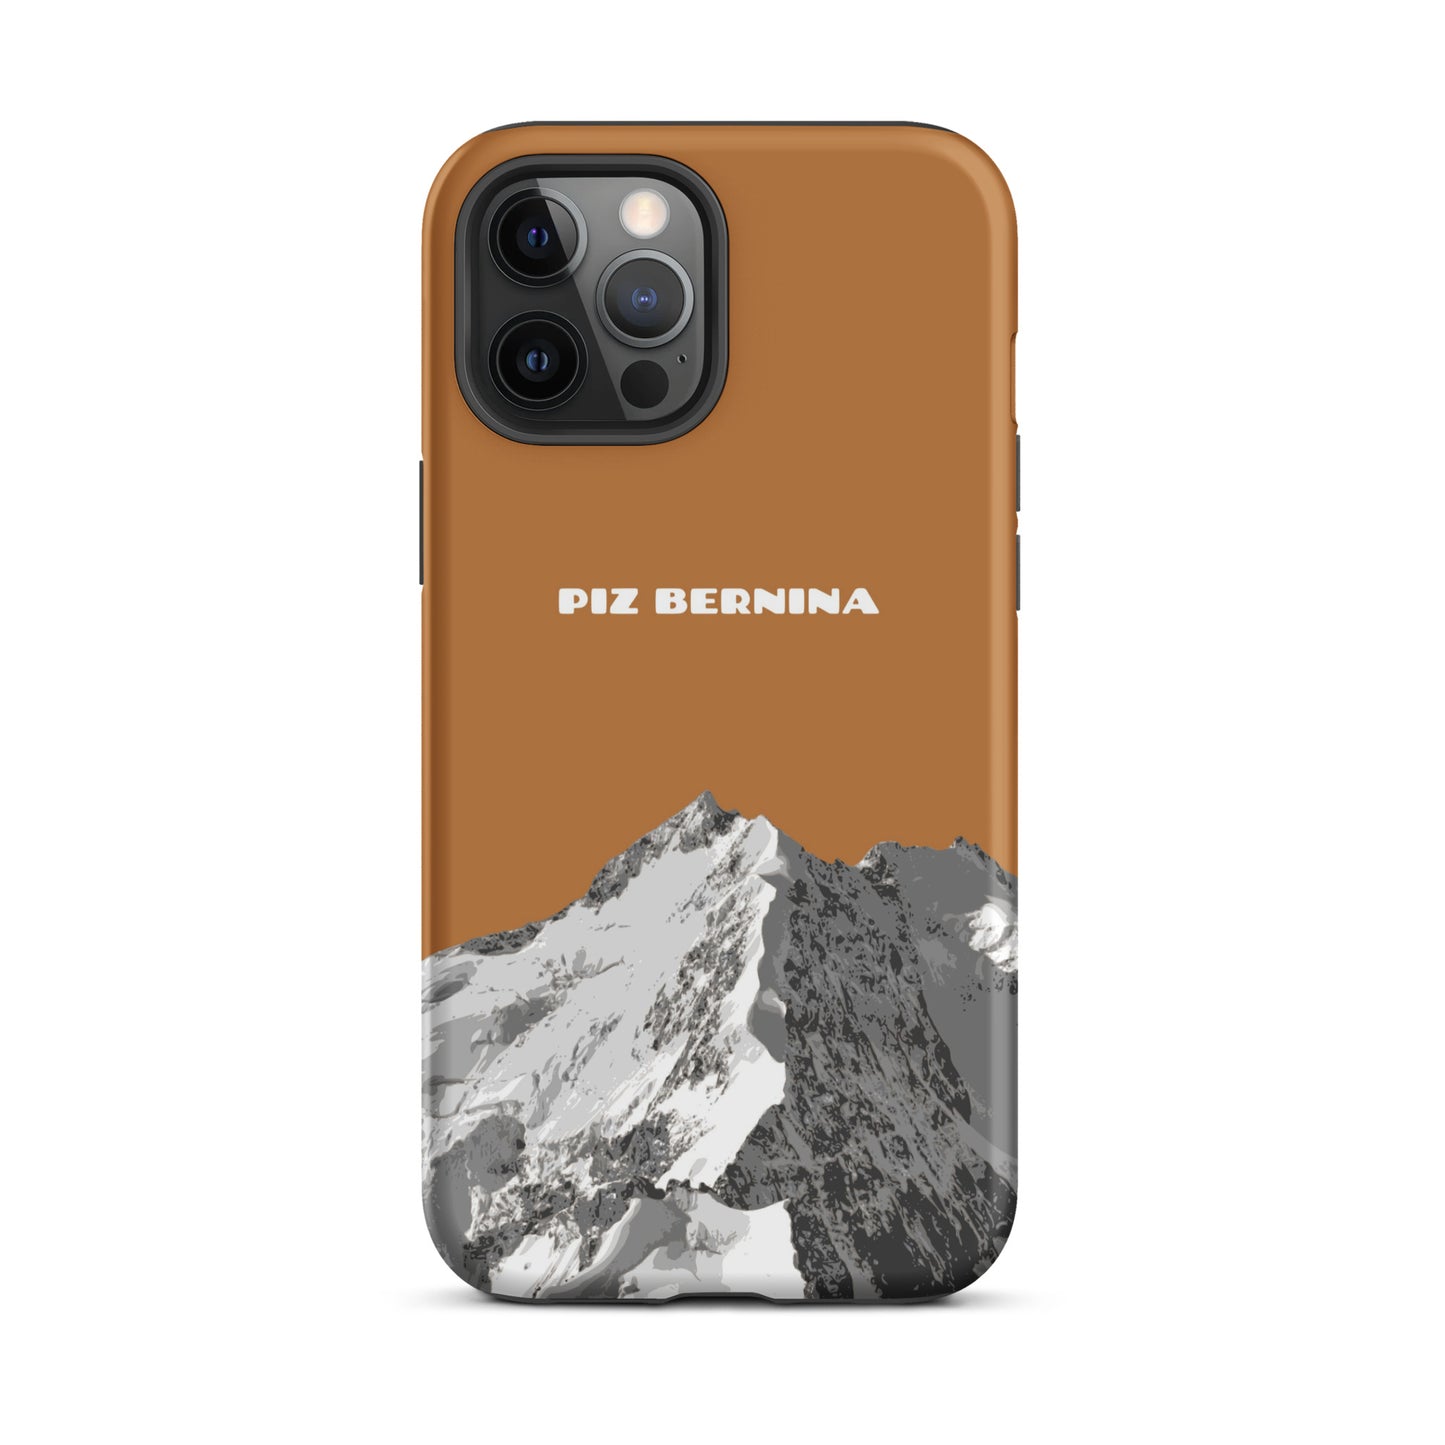 Hülle für das iPhone 12 Pro Max von Apple in der Farbe Kupfer, dass den Piz Bernina in Graubünden zeigt.